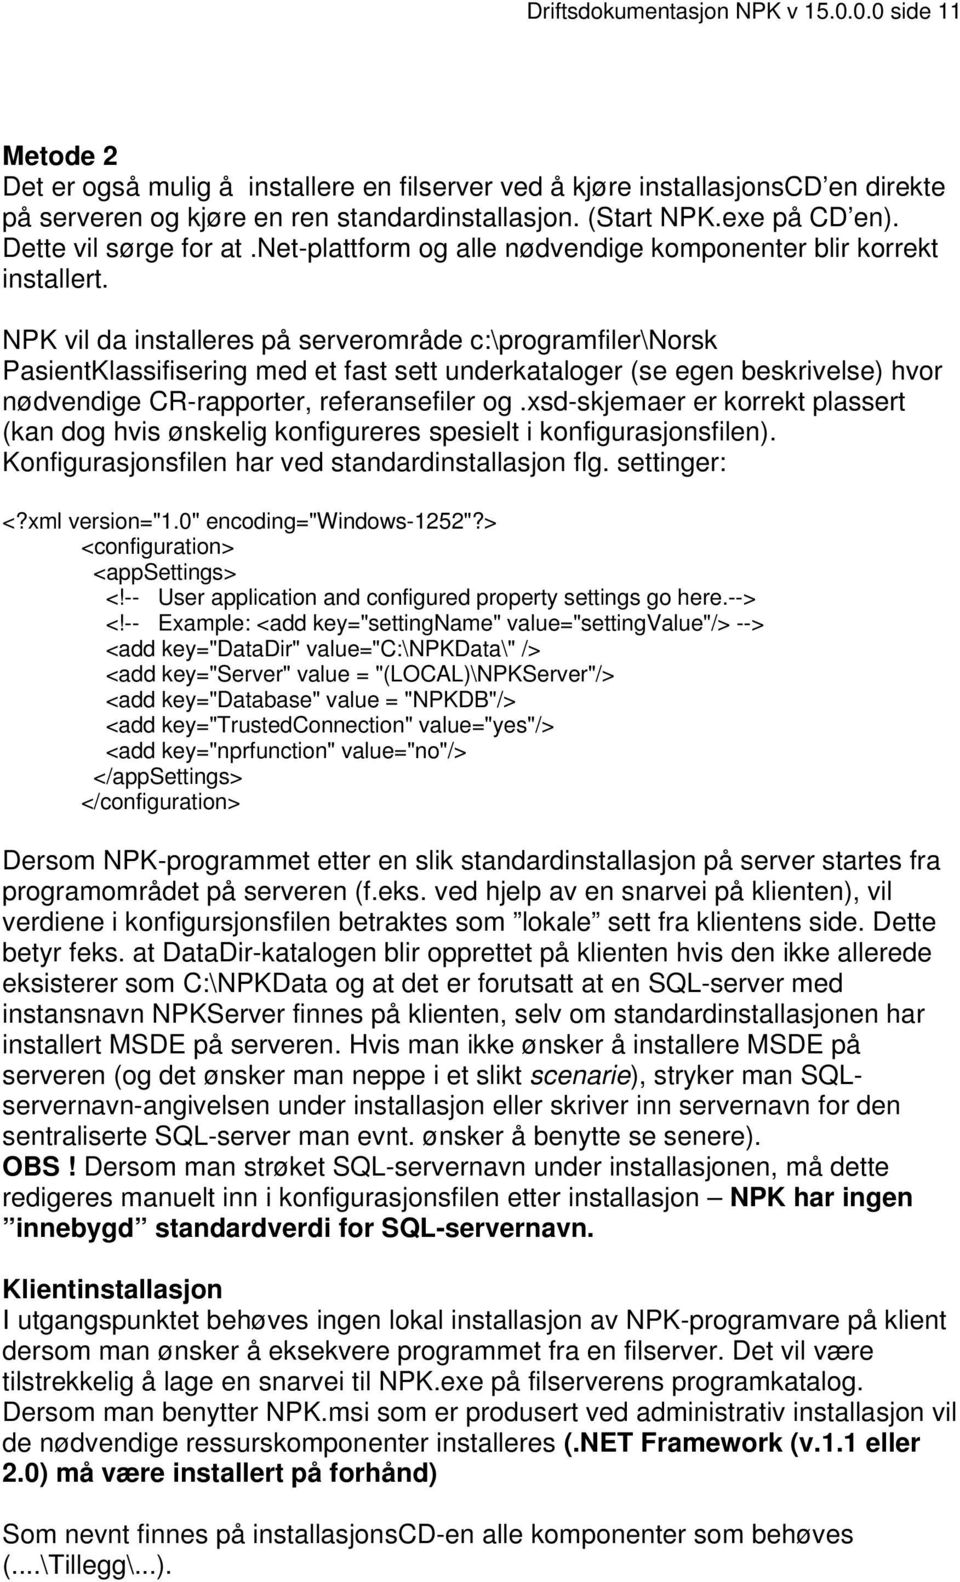 NPK vil da installeres på serverområde c:\programfiler\norsk PasientKlassifisering med et fast sett underkataloger (se egen beskrivelse) hvor nødvendige CR-rapporter, referansefiler og.